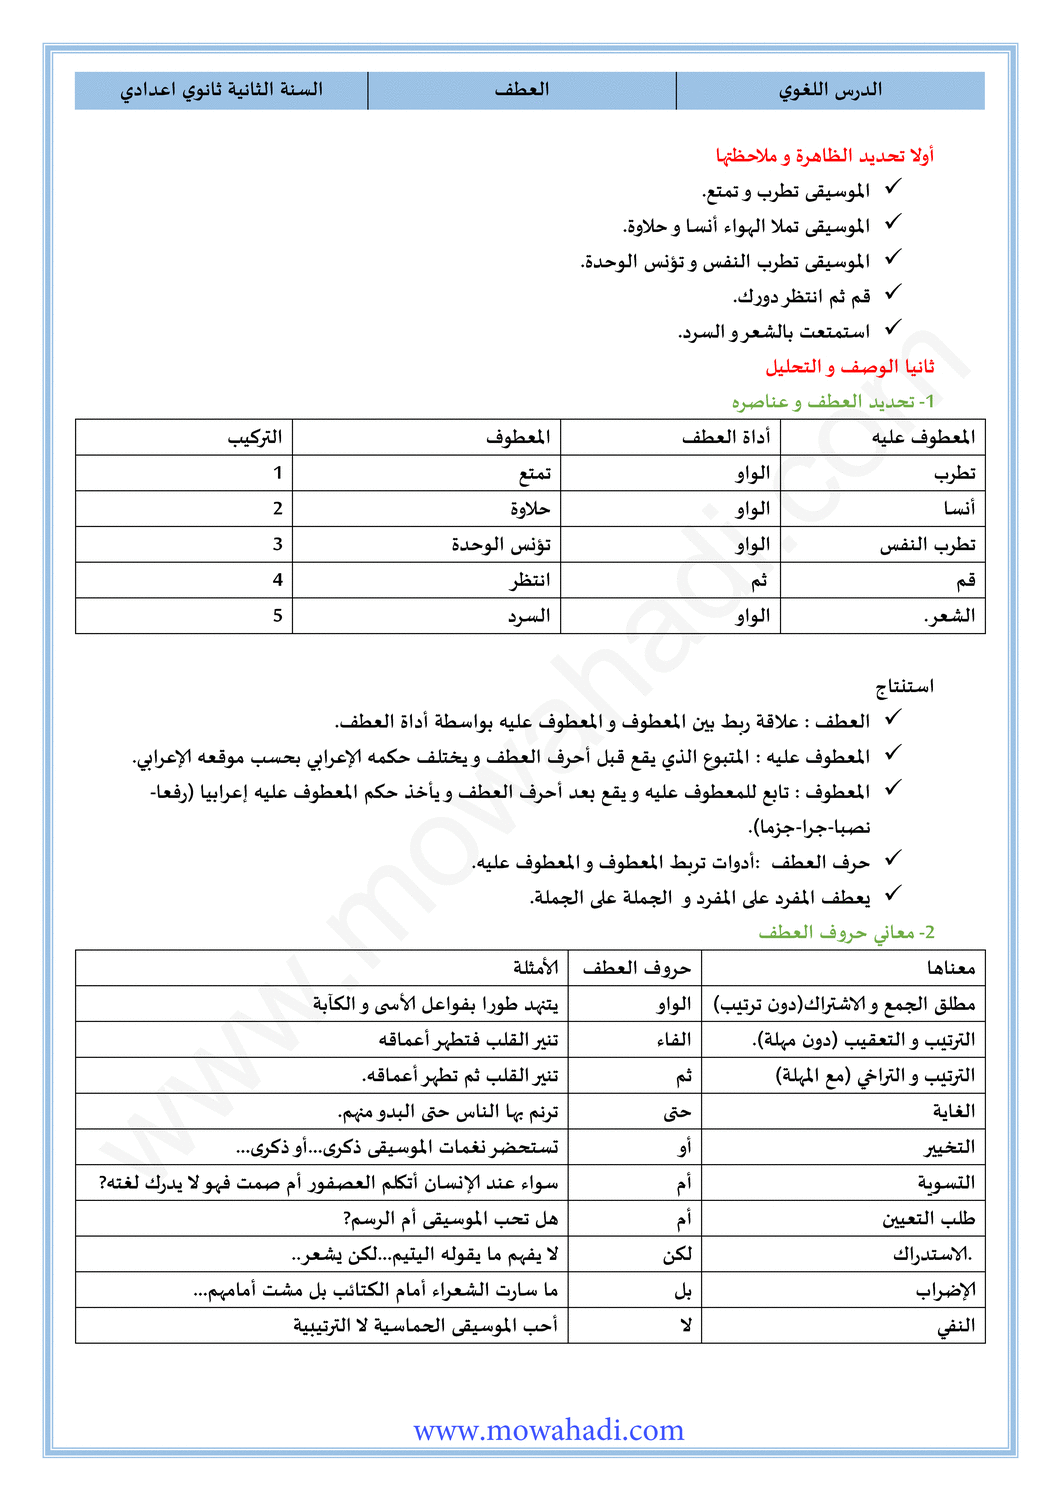 الدرس اللغوي العطف للسنة الثانية اعدادي في مادة اللغة العربية